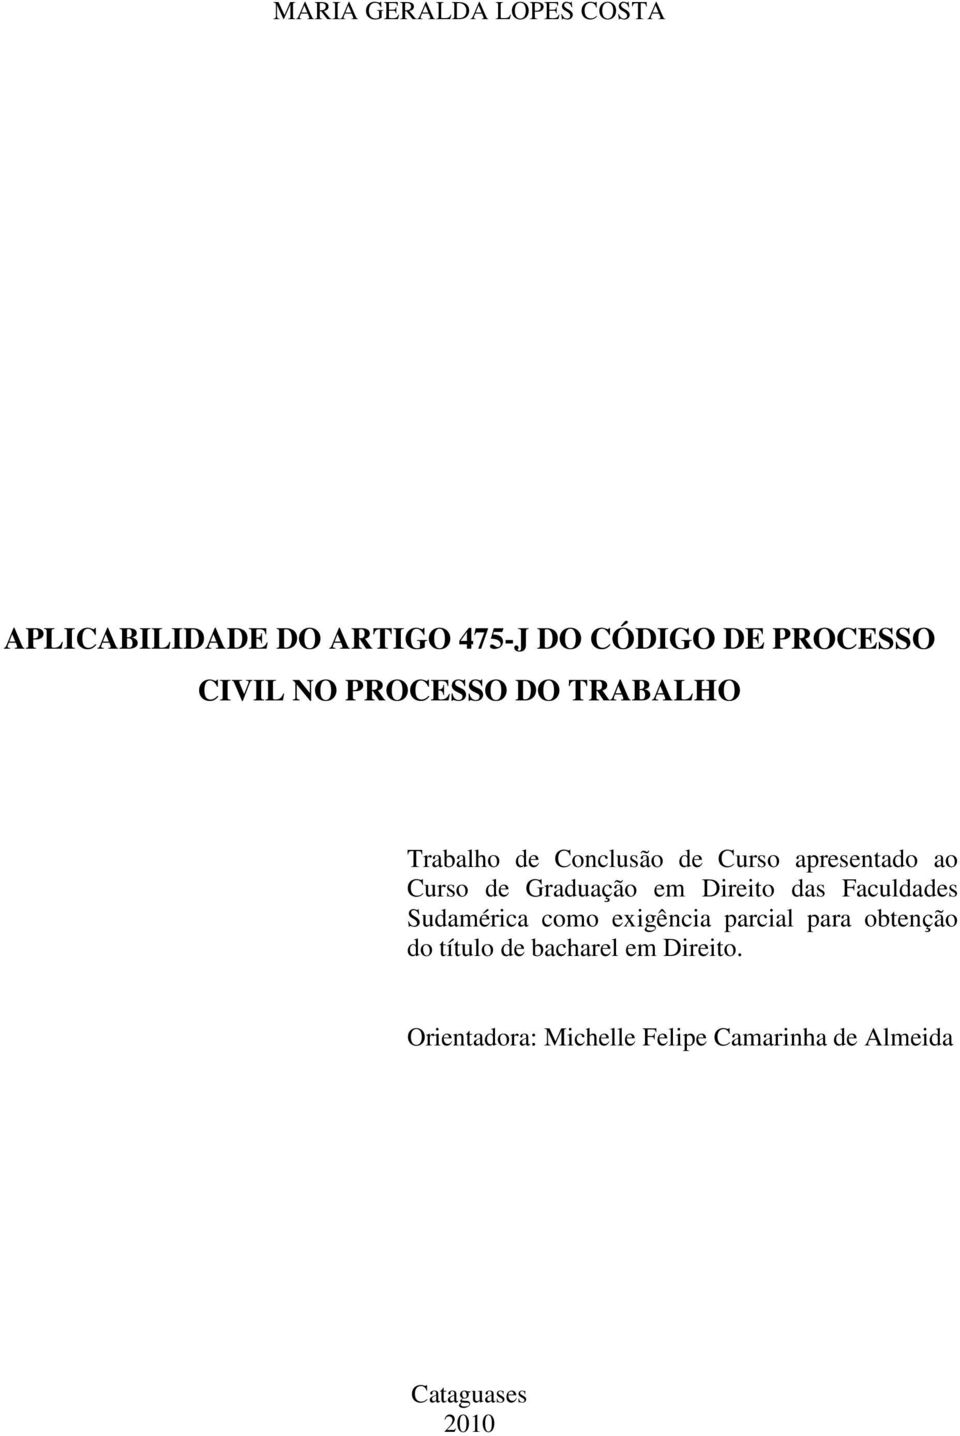 Graduação em Direito das Faculdades Sudamérica como exigência parcial para obtenção do